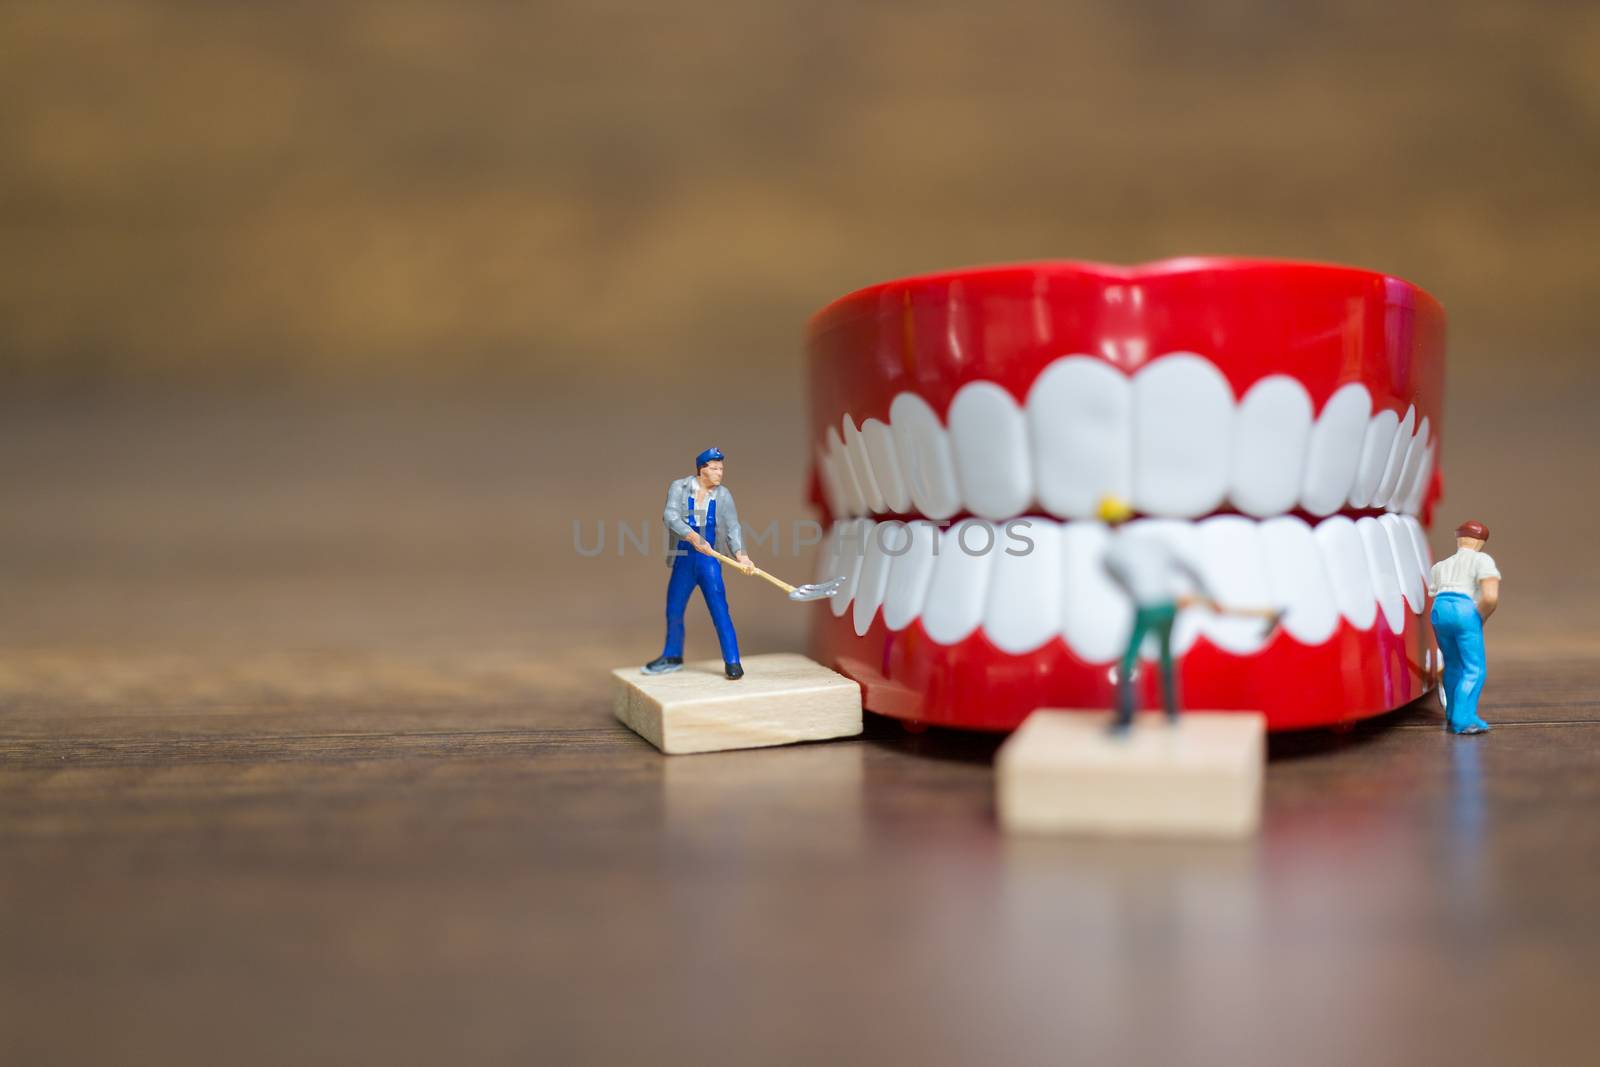 Miniature people : Worker team repairing a tooth by sirichaiyaymicro